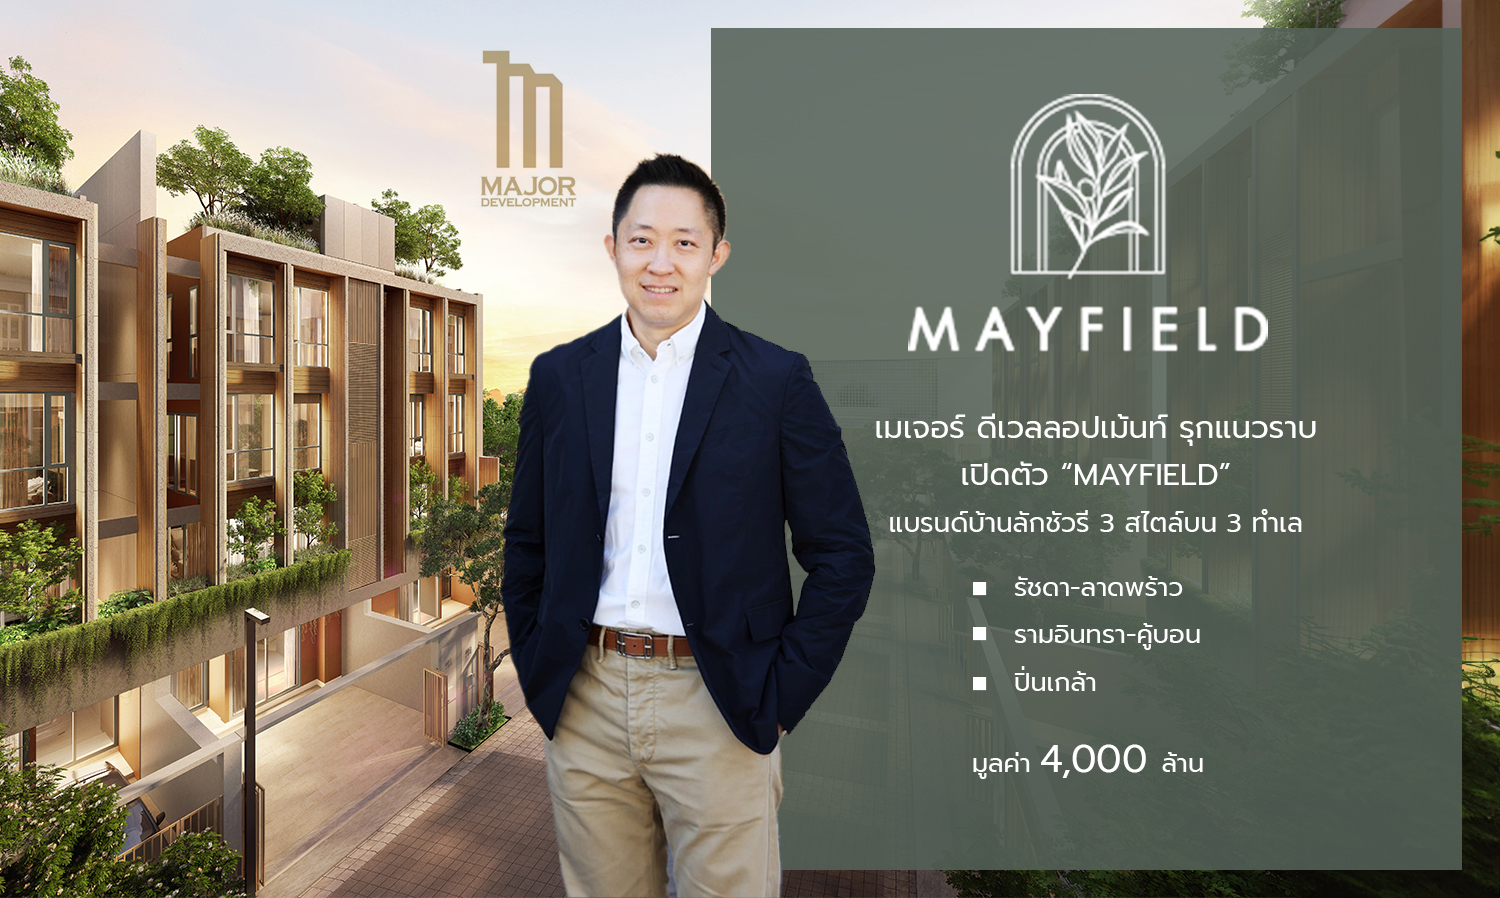 MJD รุกตลาดแนวราบ เปิดตัว “MAYFIELD” บ้านลักชัวรีแบรนด์ใหม่ ตั้งเป้ายอดขายรวมปีนี้แตะ 7,000 ล้านบาท 